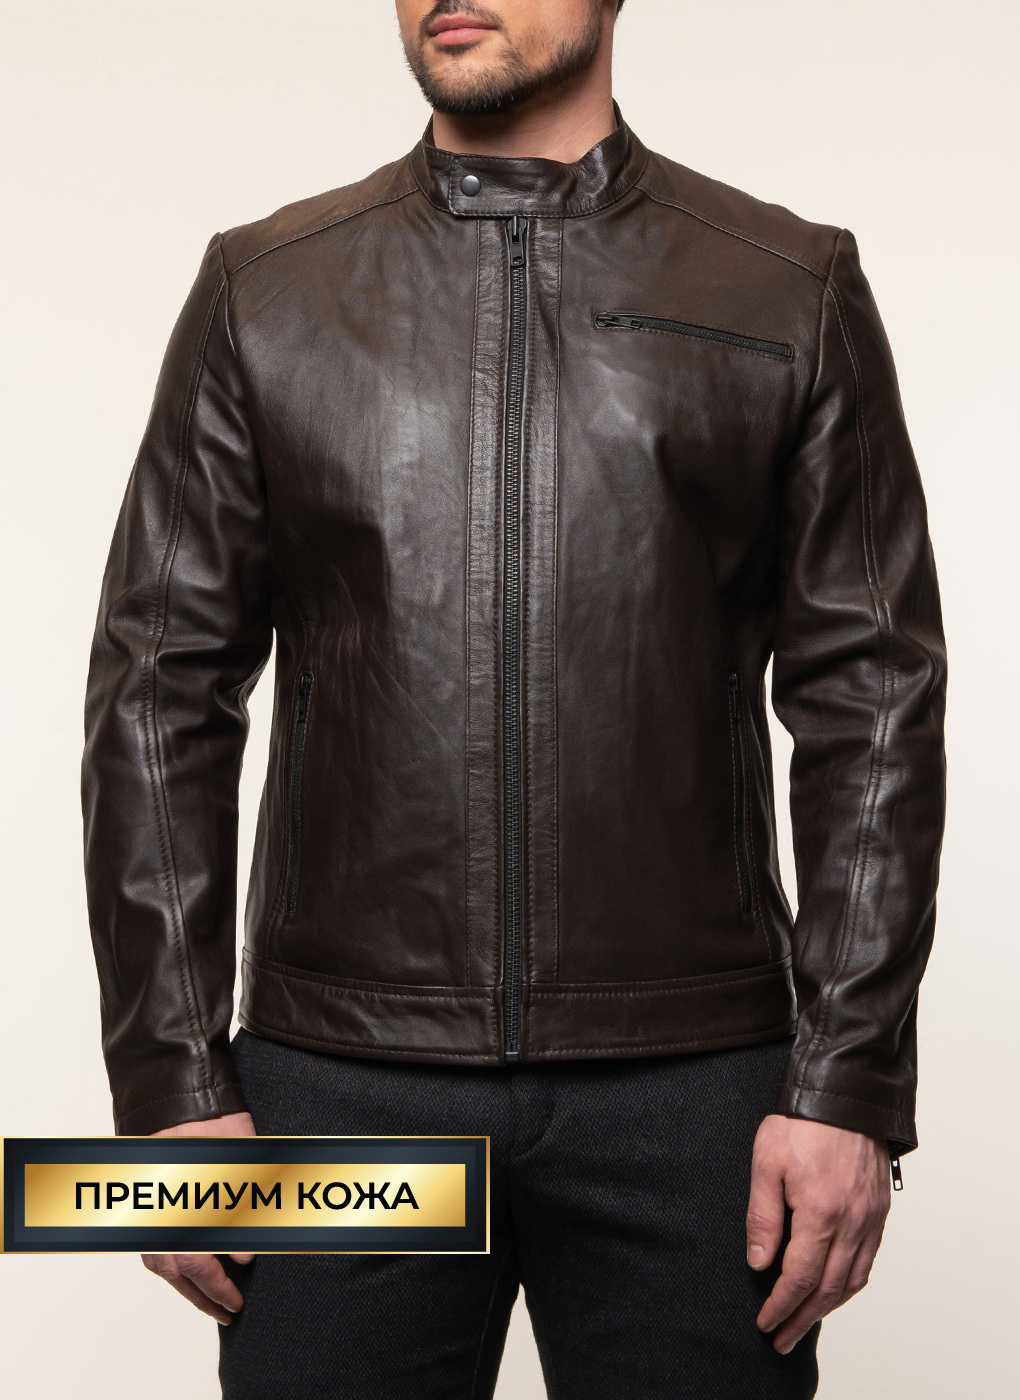 Кожаная куртка мужская Каляев 1579984 коричневая 58 RU